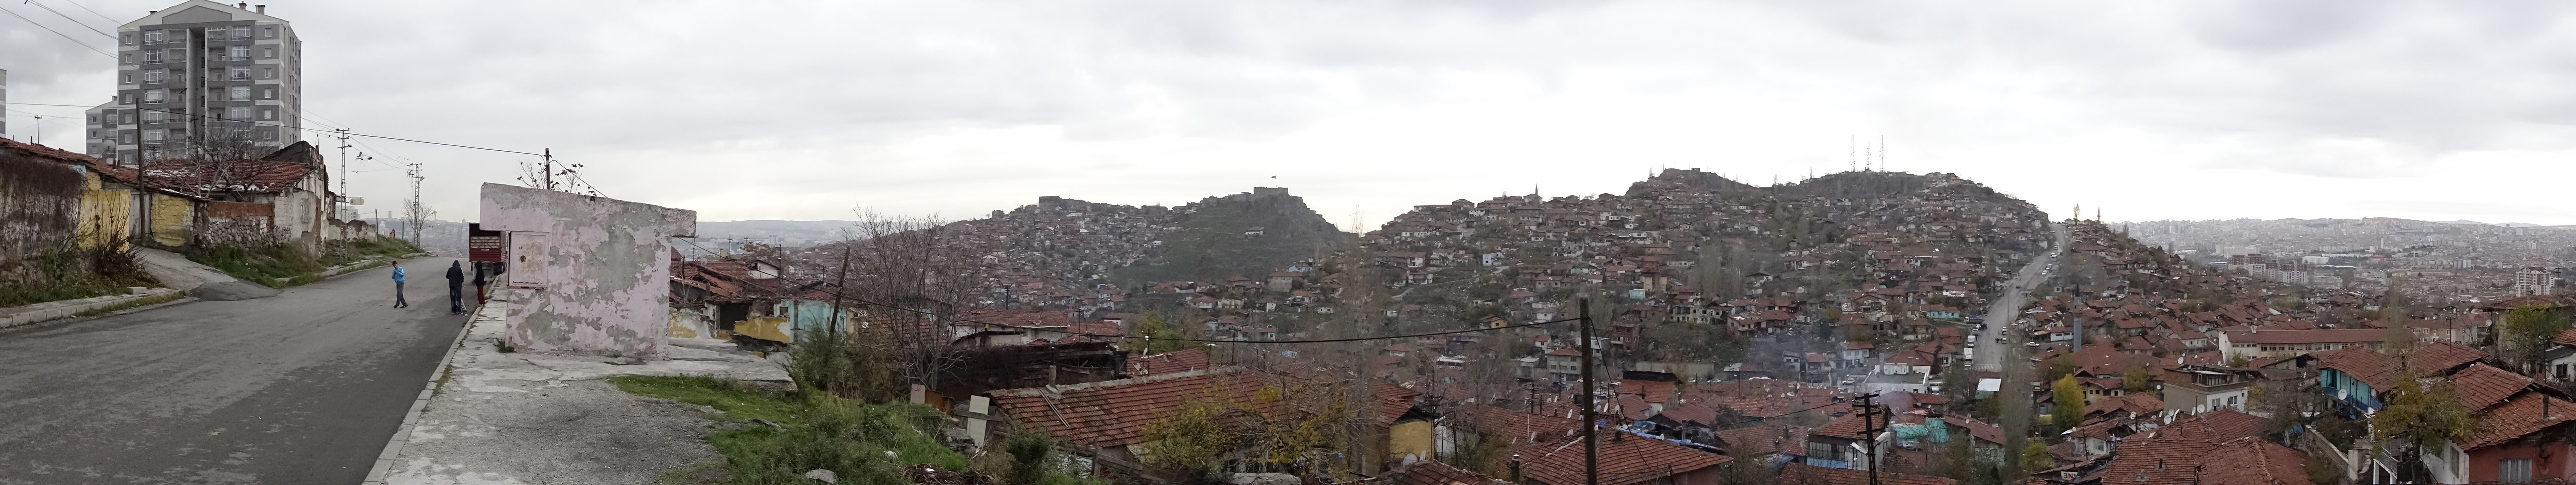 Ankara new and old november 2014 1471.jpg